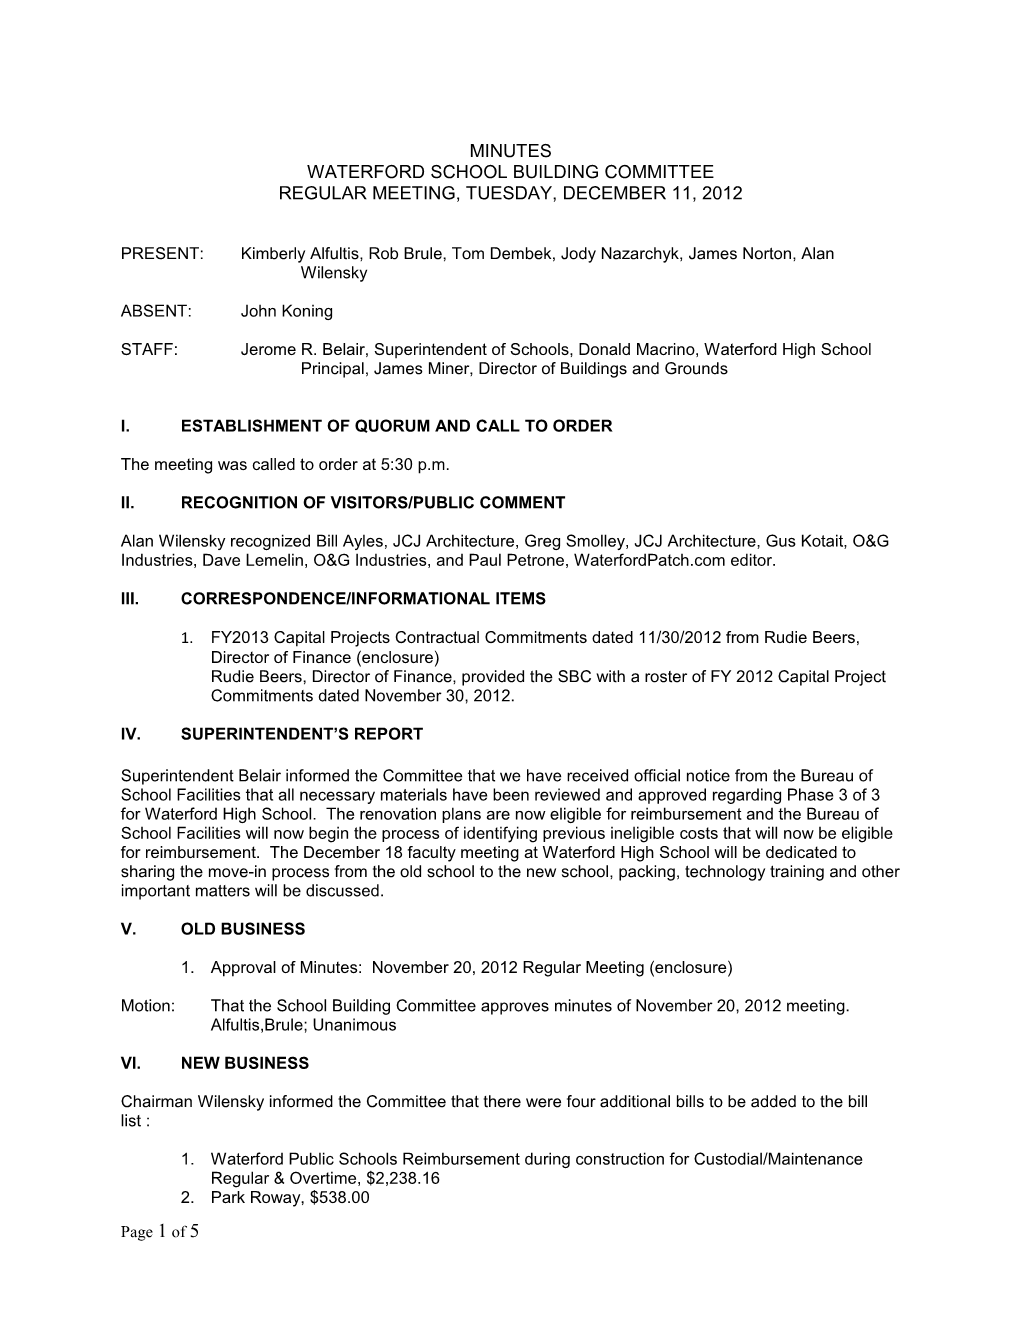 School Building Committee Minutes December 11, 2012